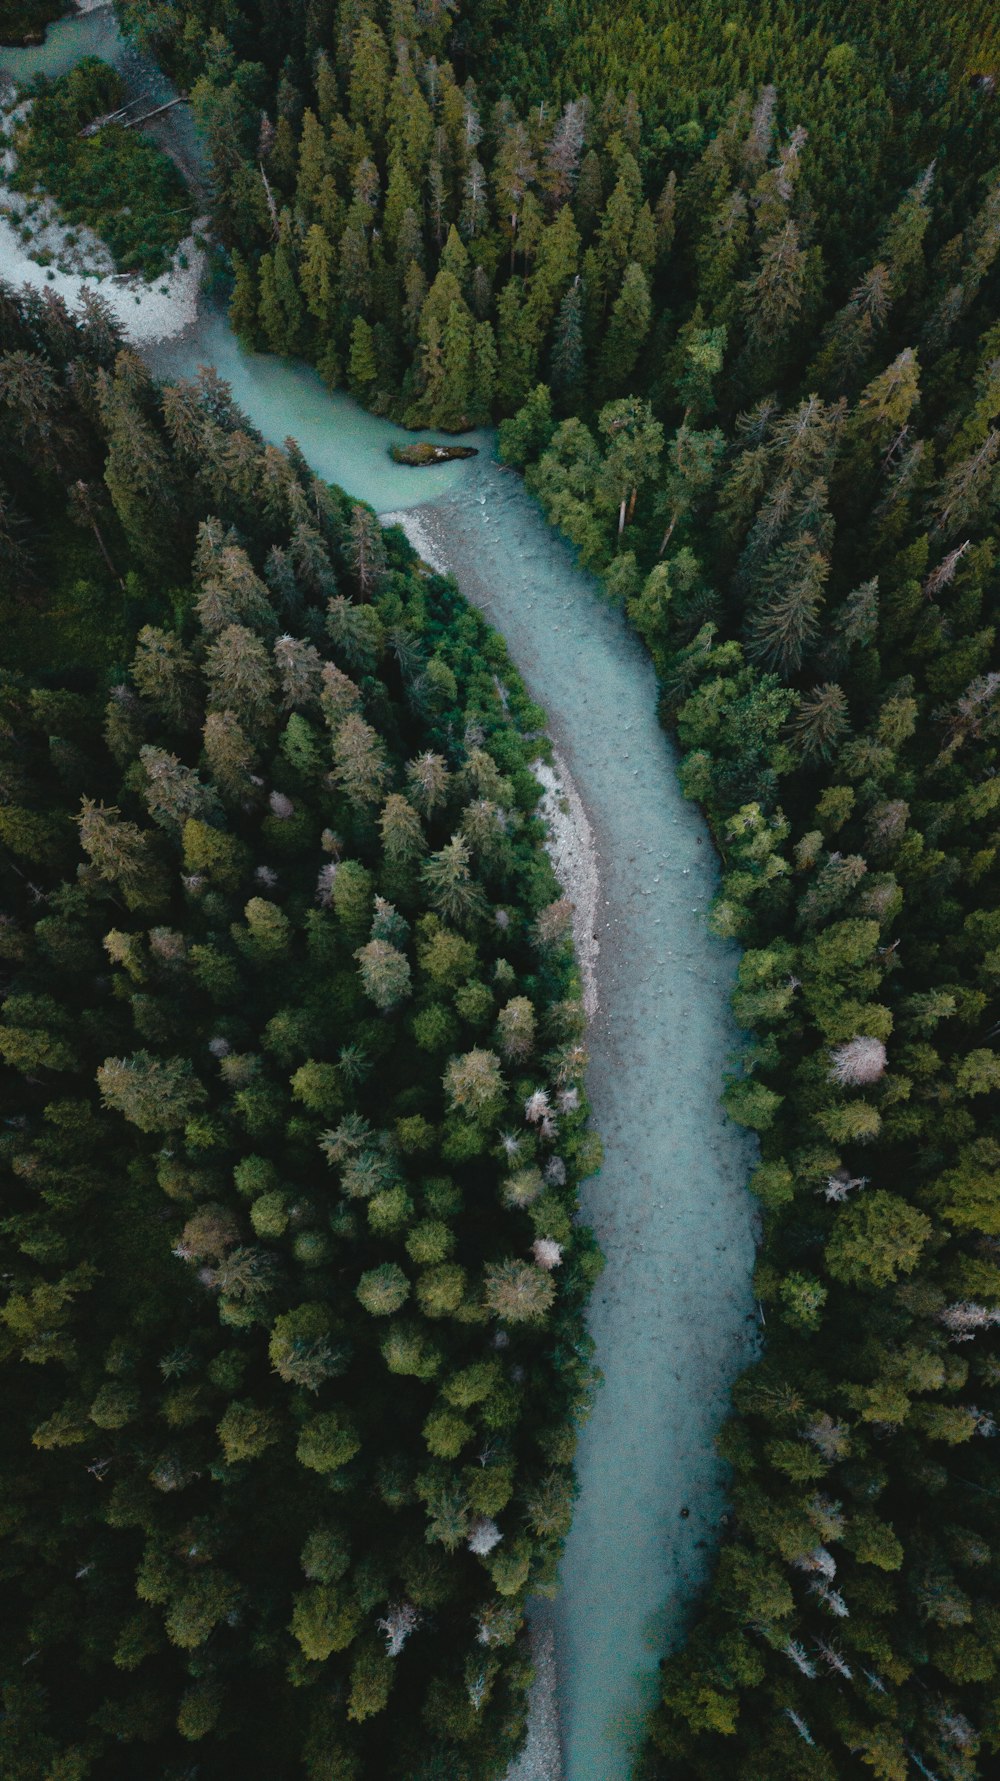 Luftaufnahme des Flusses zwischen grünen Bäumen während des Tages